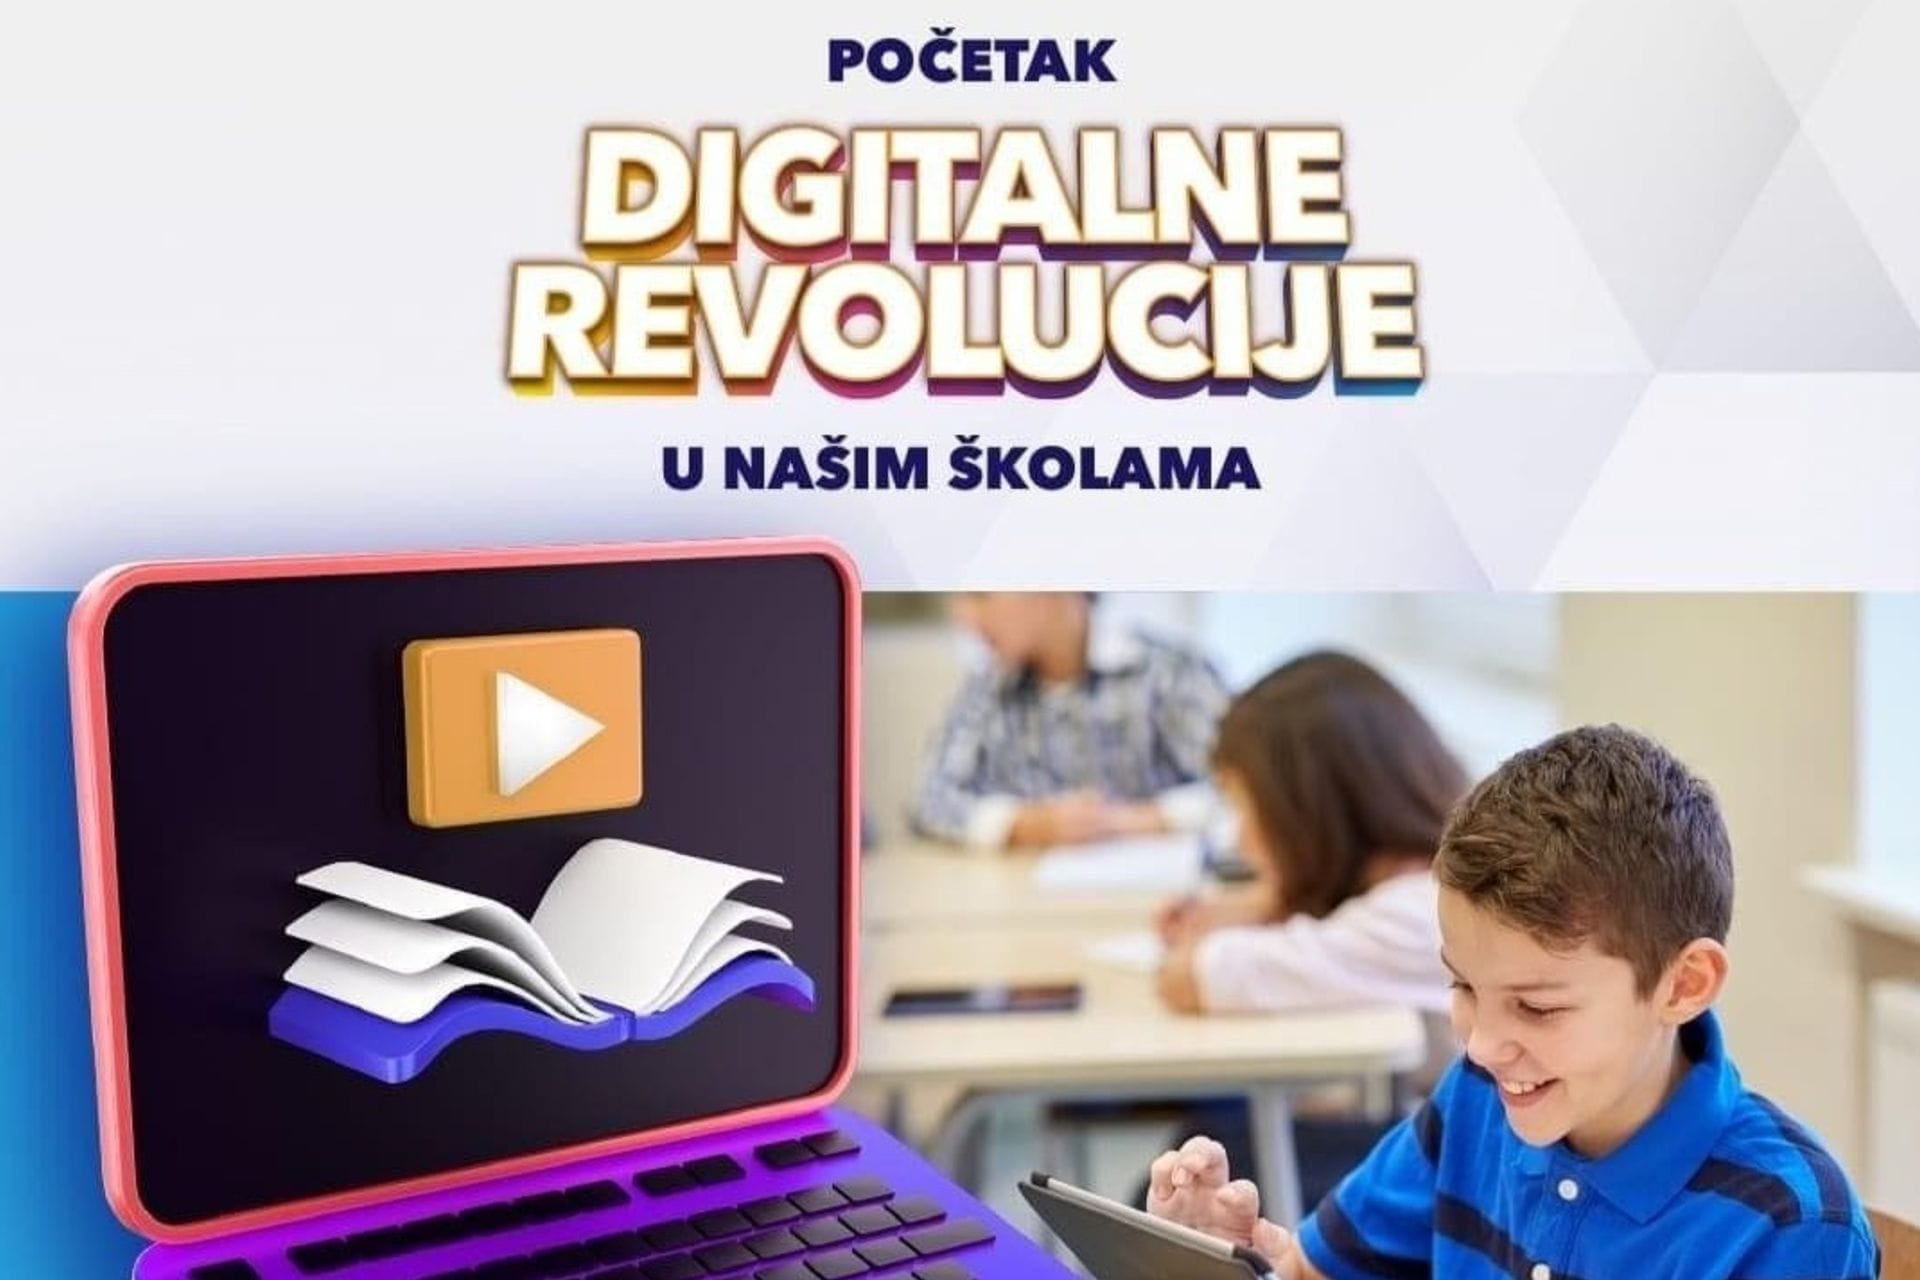 Početak digitalne revolucije u CG školama